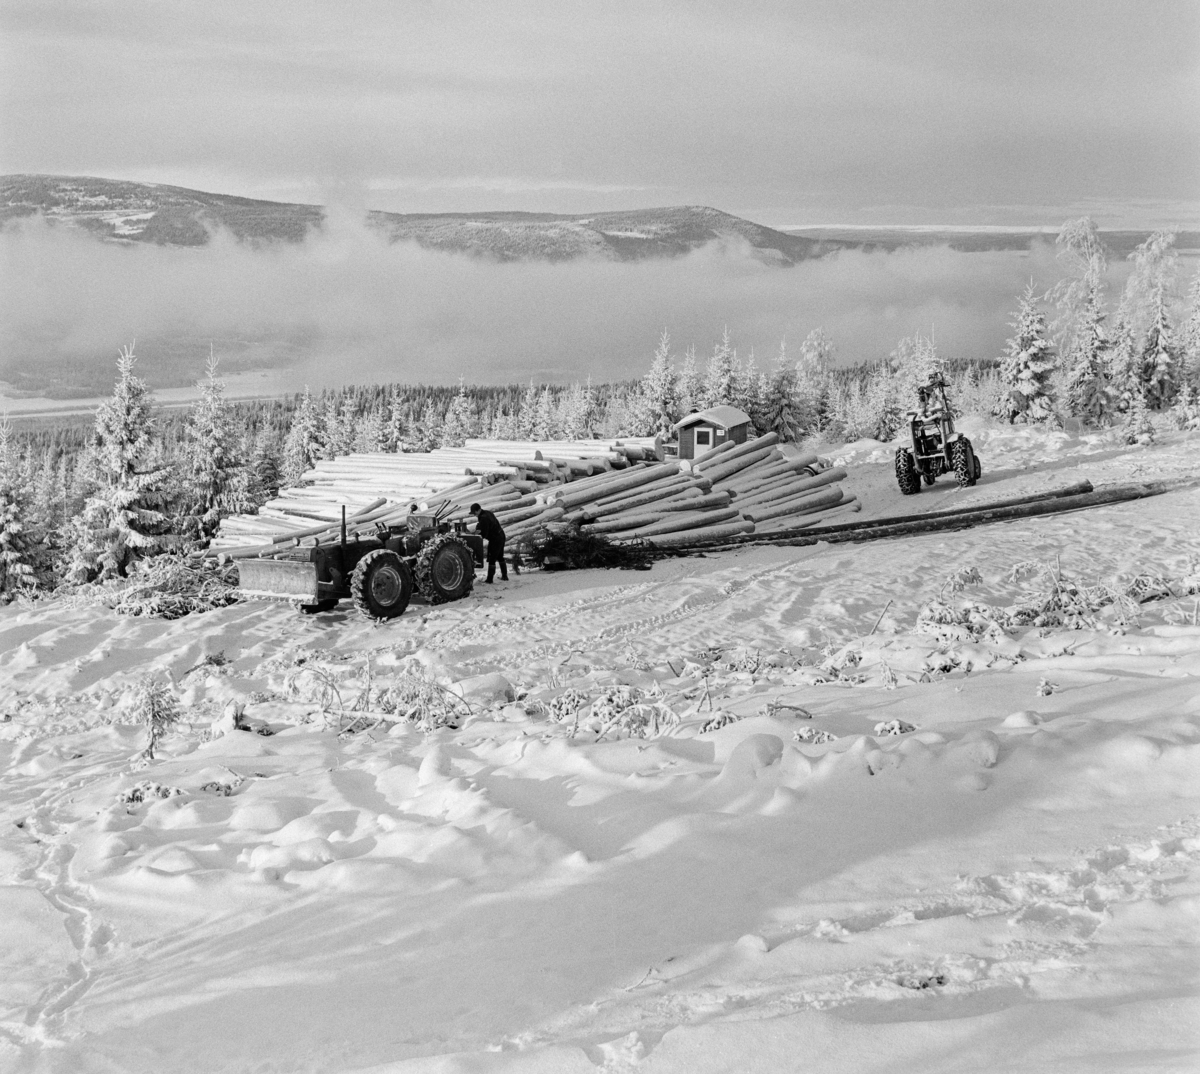 Tømmerkjøring med traktorer ovenfor Innsetsetra i Strandbygda i Elverum kommune i Hedmark vinteren 1969.  Fotografiet er tatt oppe i ei li en kald vinterdag.  Vi ser hvordan tåka ligger over dalbotnen nedenfor.  I forgrunnen arbeides det med to traktorer ved en velteplass.  Bak tømmeret skimter vi taket på ei kvilebrakke.  Ifølge nåværende eier av den skogen der fotografiet er tatt ble tømmeret lunnet med en 1958-modell Fordson major super county som var påmontert en totromlet Isachsen-vinsj.  Den andre traktoren er antakelig en 1969-modell Ferguson 178 med griplaster fra produsenten Vendelbjørn. Bruk av traktorer til framkjøring av tømmer fra hogstfeltene i skogen til velteplasser ved bilveg der det kunne hentes og transporteres videre på lastebiler ble raskt vanlig i 1950- og 60-åra. Etter hvert ble det også gjort forsøk med lunning av helstammer - altså tømmer som ikke var "aptert".  Innføringa av slike driftsprinsipper var nært knyttet til den rammestyrte traktorteknologien.  Den første rammestyrte skogstraktoren for stammelunning ble hentet til Norge i 1962 i et samerbeid mellom Skogforsøksvesenet og Meraker Brug.  Vinteren 1969 fantes det 233 slike maskiner i Norge, flest i de store skogfylkene med Hedmark og Telemark i spissen.  En noe velvillig kalkyle antydet at disse rammestyrte traktorene vinteren 1969 tok unna bortimot 20 prosent av lunningskvantumet.  En aktør i det skogteknologiske forskingsmiljøet tilskrev stammelunneren og motorsaga hovedæren for at tariffutviklinga i skogbruket hadde tatt ei - for skogeierne - gunstig vending.  Traktorer med tømmertilhenger og griplasterkran ble lansert som en nyhet i slutten av 1960-åra.  Da hadde den svenske produsenten HIAB lansert sin "skogselefant".  Her til lands var skogteknologene skeptiske til denne maskintypen.  Med den norske eiendomsstrukturen og i norsk terreng var det helstammelunnerne som var framtidsrettet, hevdet de.  Mjøsen, Glommen og Nedre Glommen skogeierforeninger satte likevel i gang forsøk med det de kalte «kombinasjonsmaskiner» - traktorer med griplastere og boggidoninger.  Etter hvert var det denne teknologien som vant fram.  Skogteknologene kalte dem for «lastetraktorer», mens maskinforhandlerne brukte betegnelsen «lassbærer», for å tydeliggjøre at det tømmeret man fikk fram ikke ville være sølete og tilgriset, slik stammelunnet virke kunne være, i hvert fall i sommerhalvåret.  Traktoren til høyre på dette fotografiet hadde kran med gripeklo, men ikke boggitilhenger av den typen som de svenske produsentene leverte.